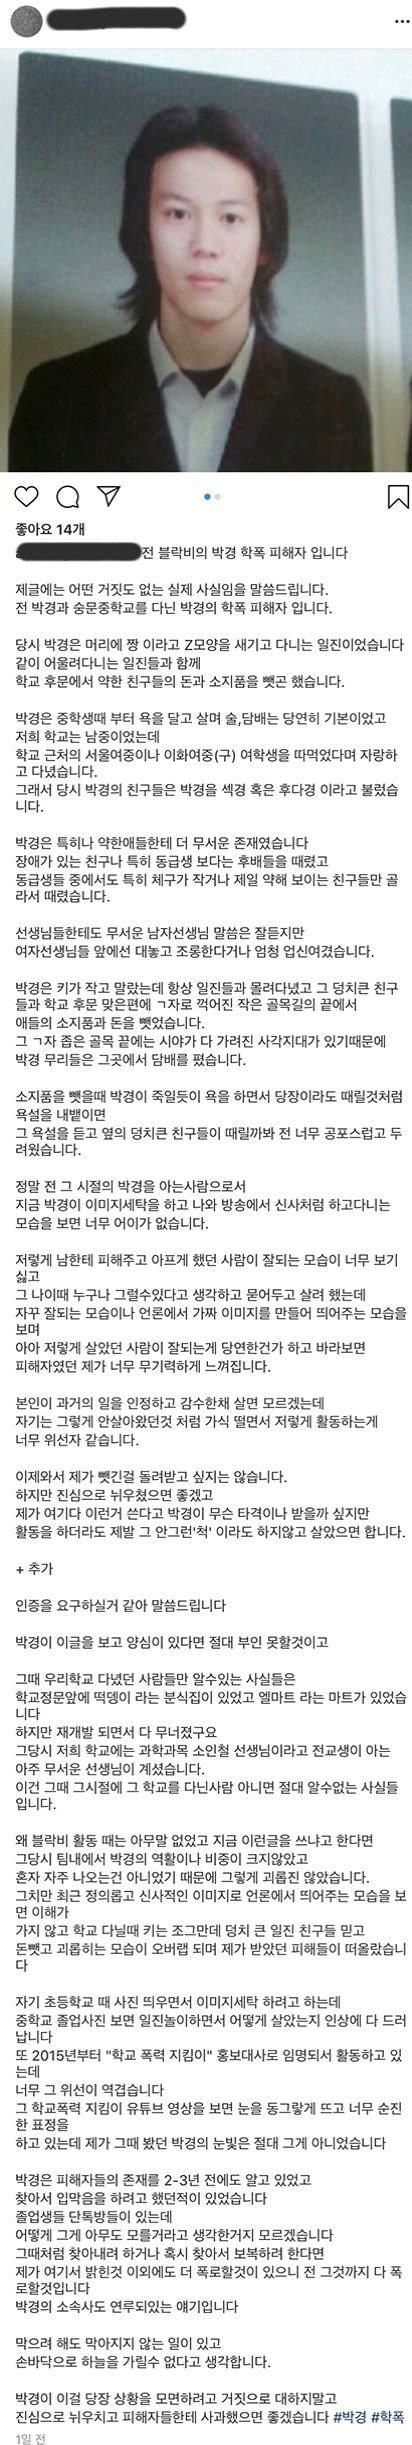 Park Kyung thừa nhận bắt nạt bạn học